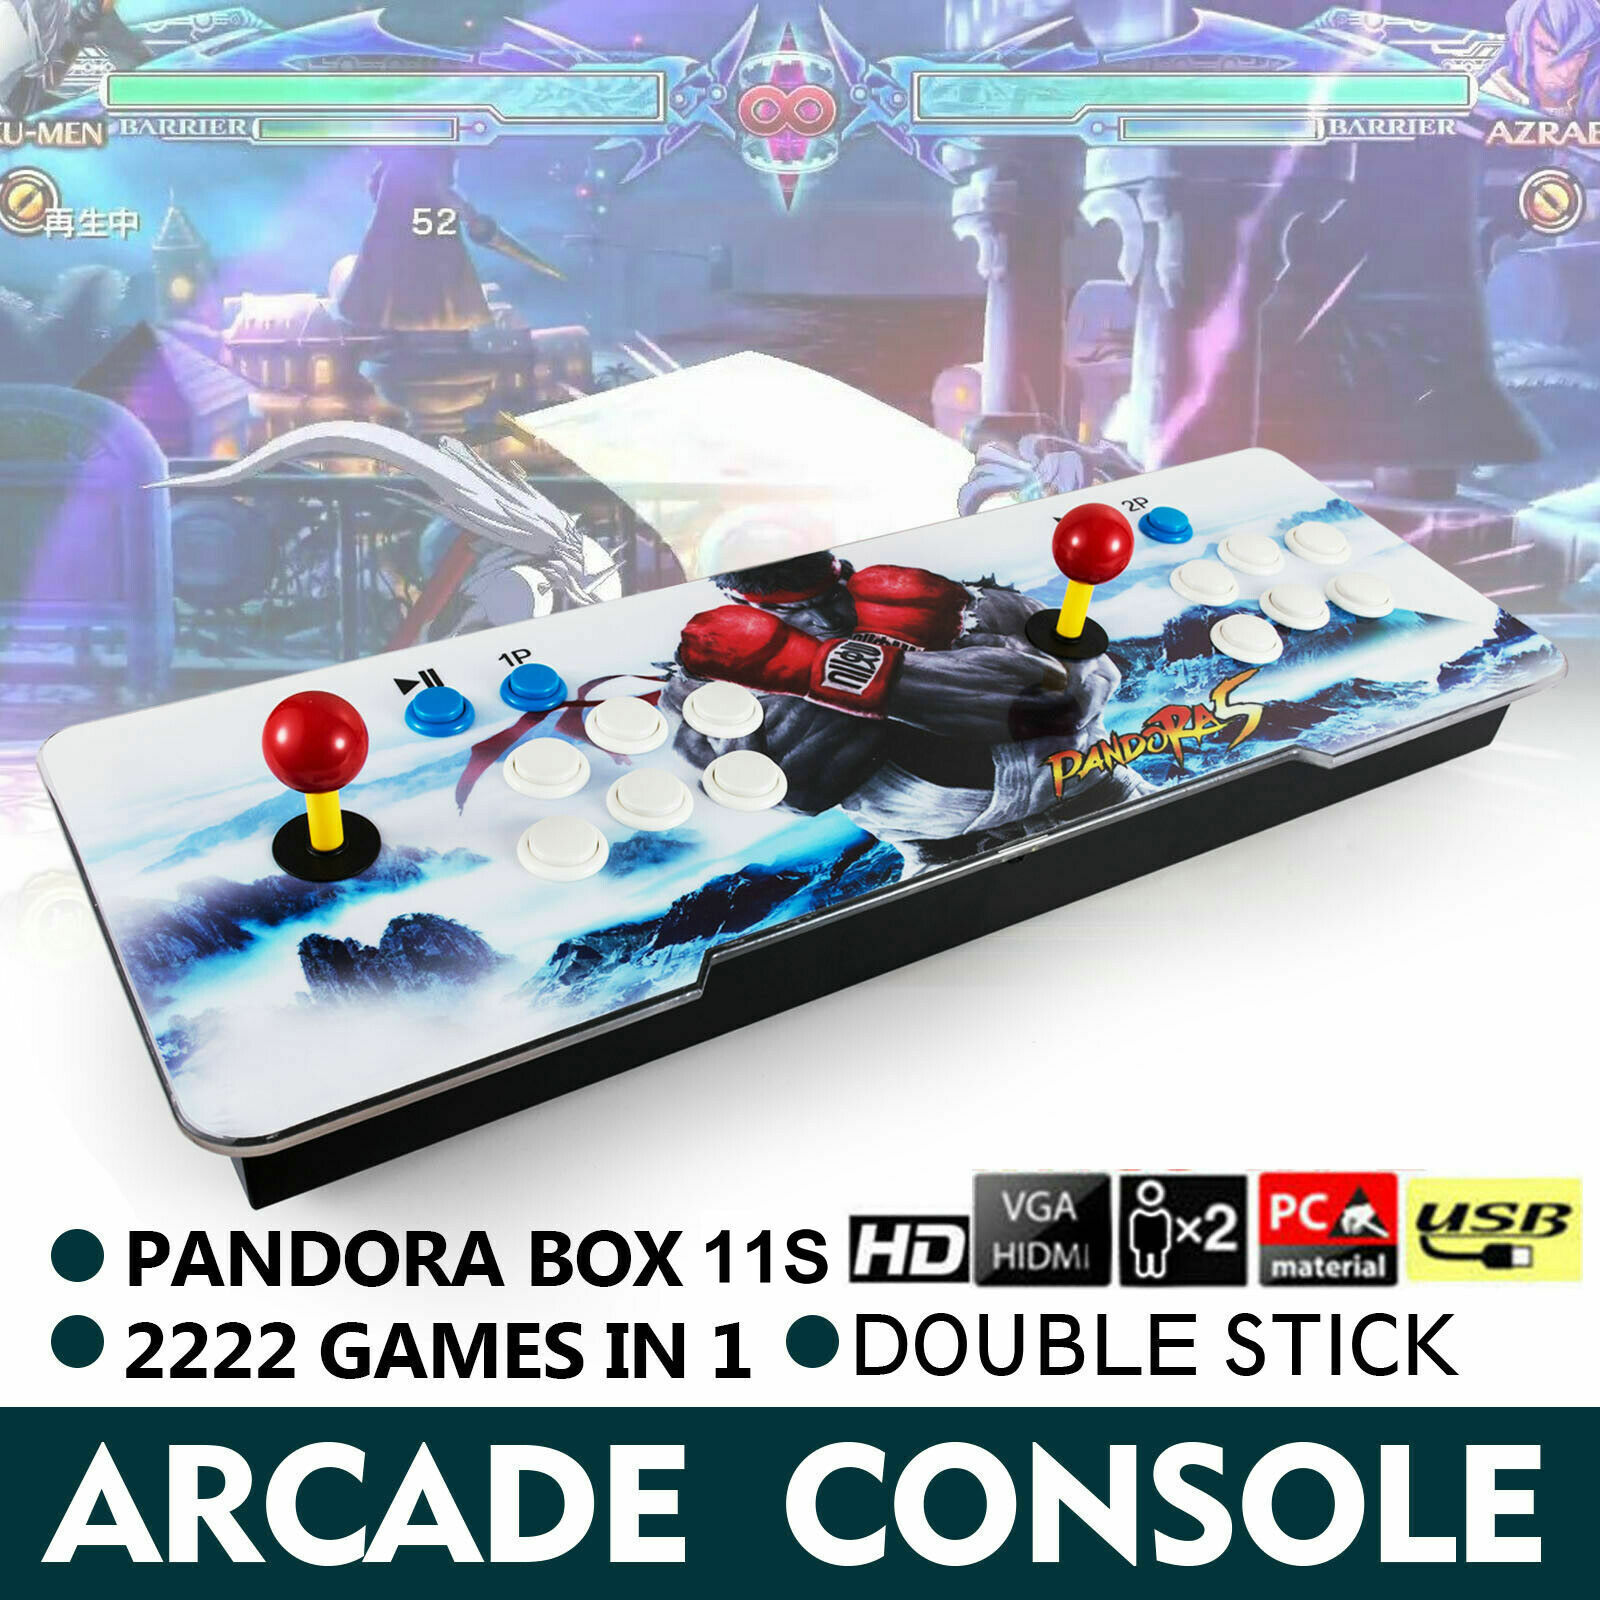 2222 Games in 1 Pandora Box 11 Retro Video Game Double Stick Arcade Console New